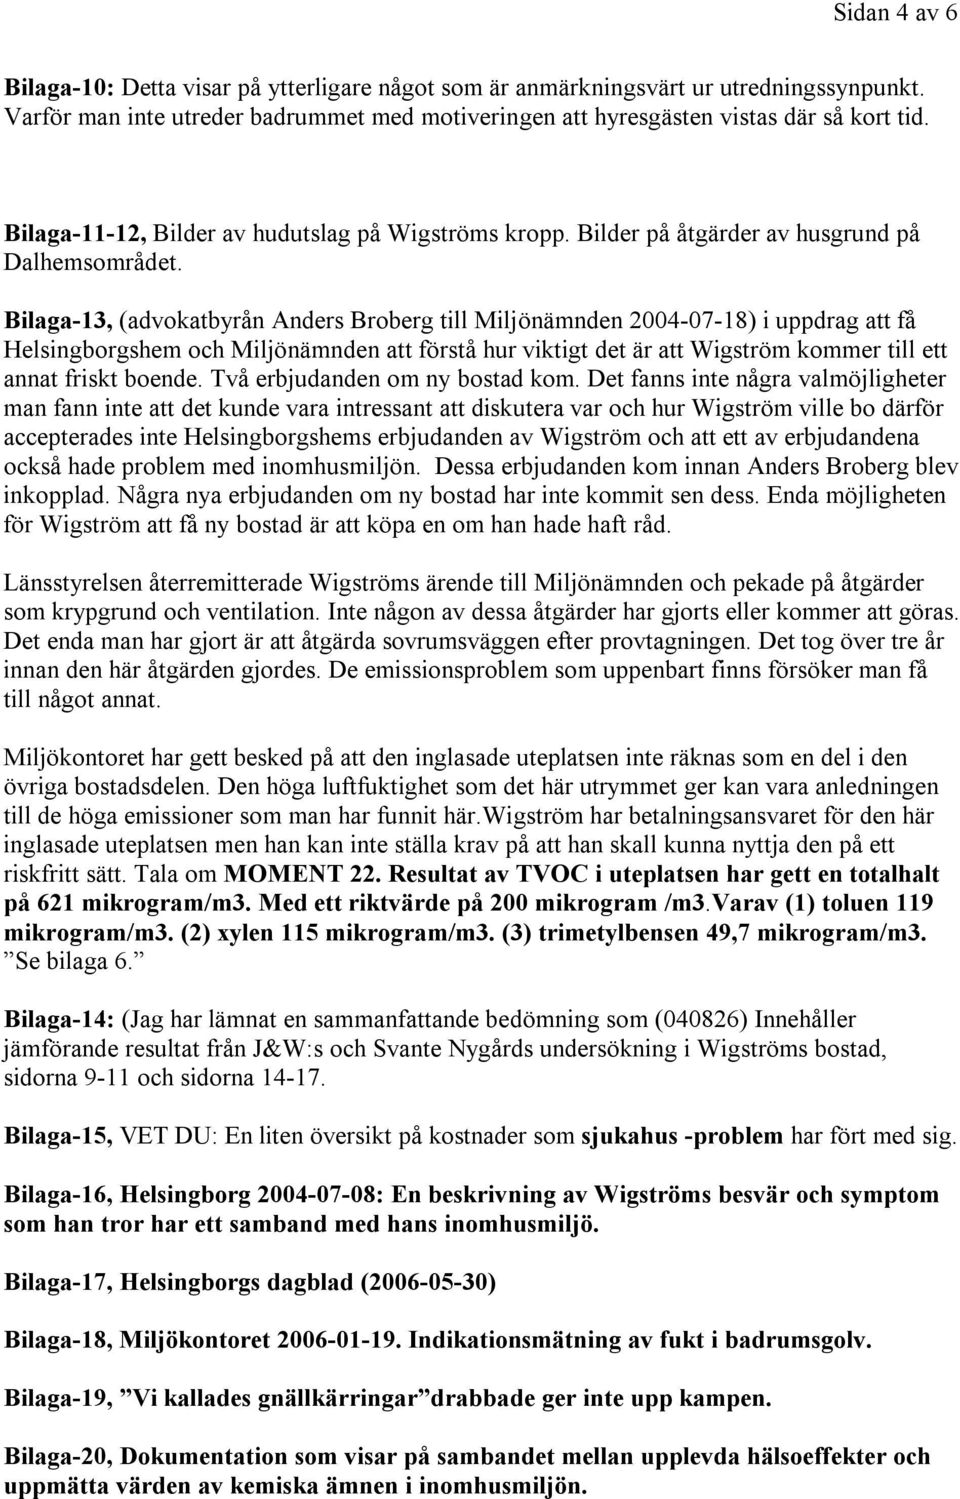 Bilaga-13, (advokatbyrån Anders Broberg till Miljönämnden 2004-07-18) i uppdrag att få Helsingborgshem och Miljönämnden att förstå hur viktigt det är att Wigström kommer till ett annat friskt boende.